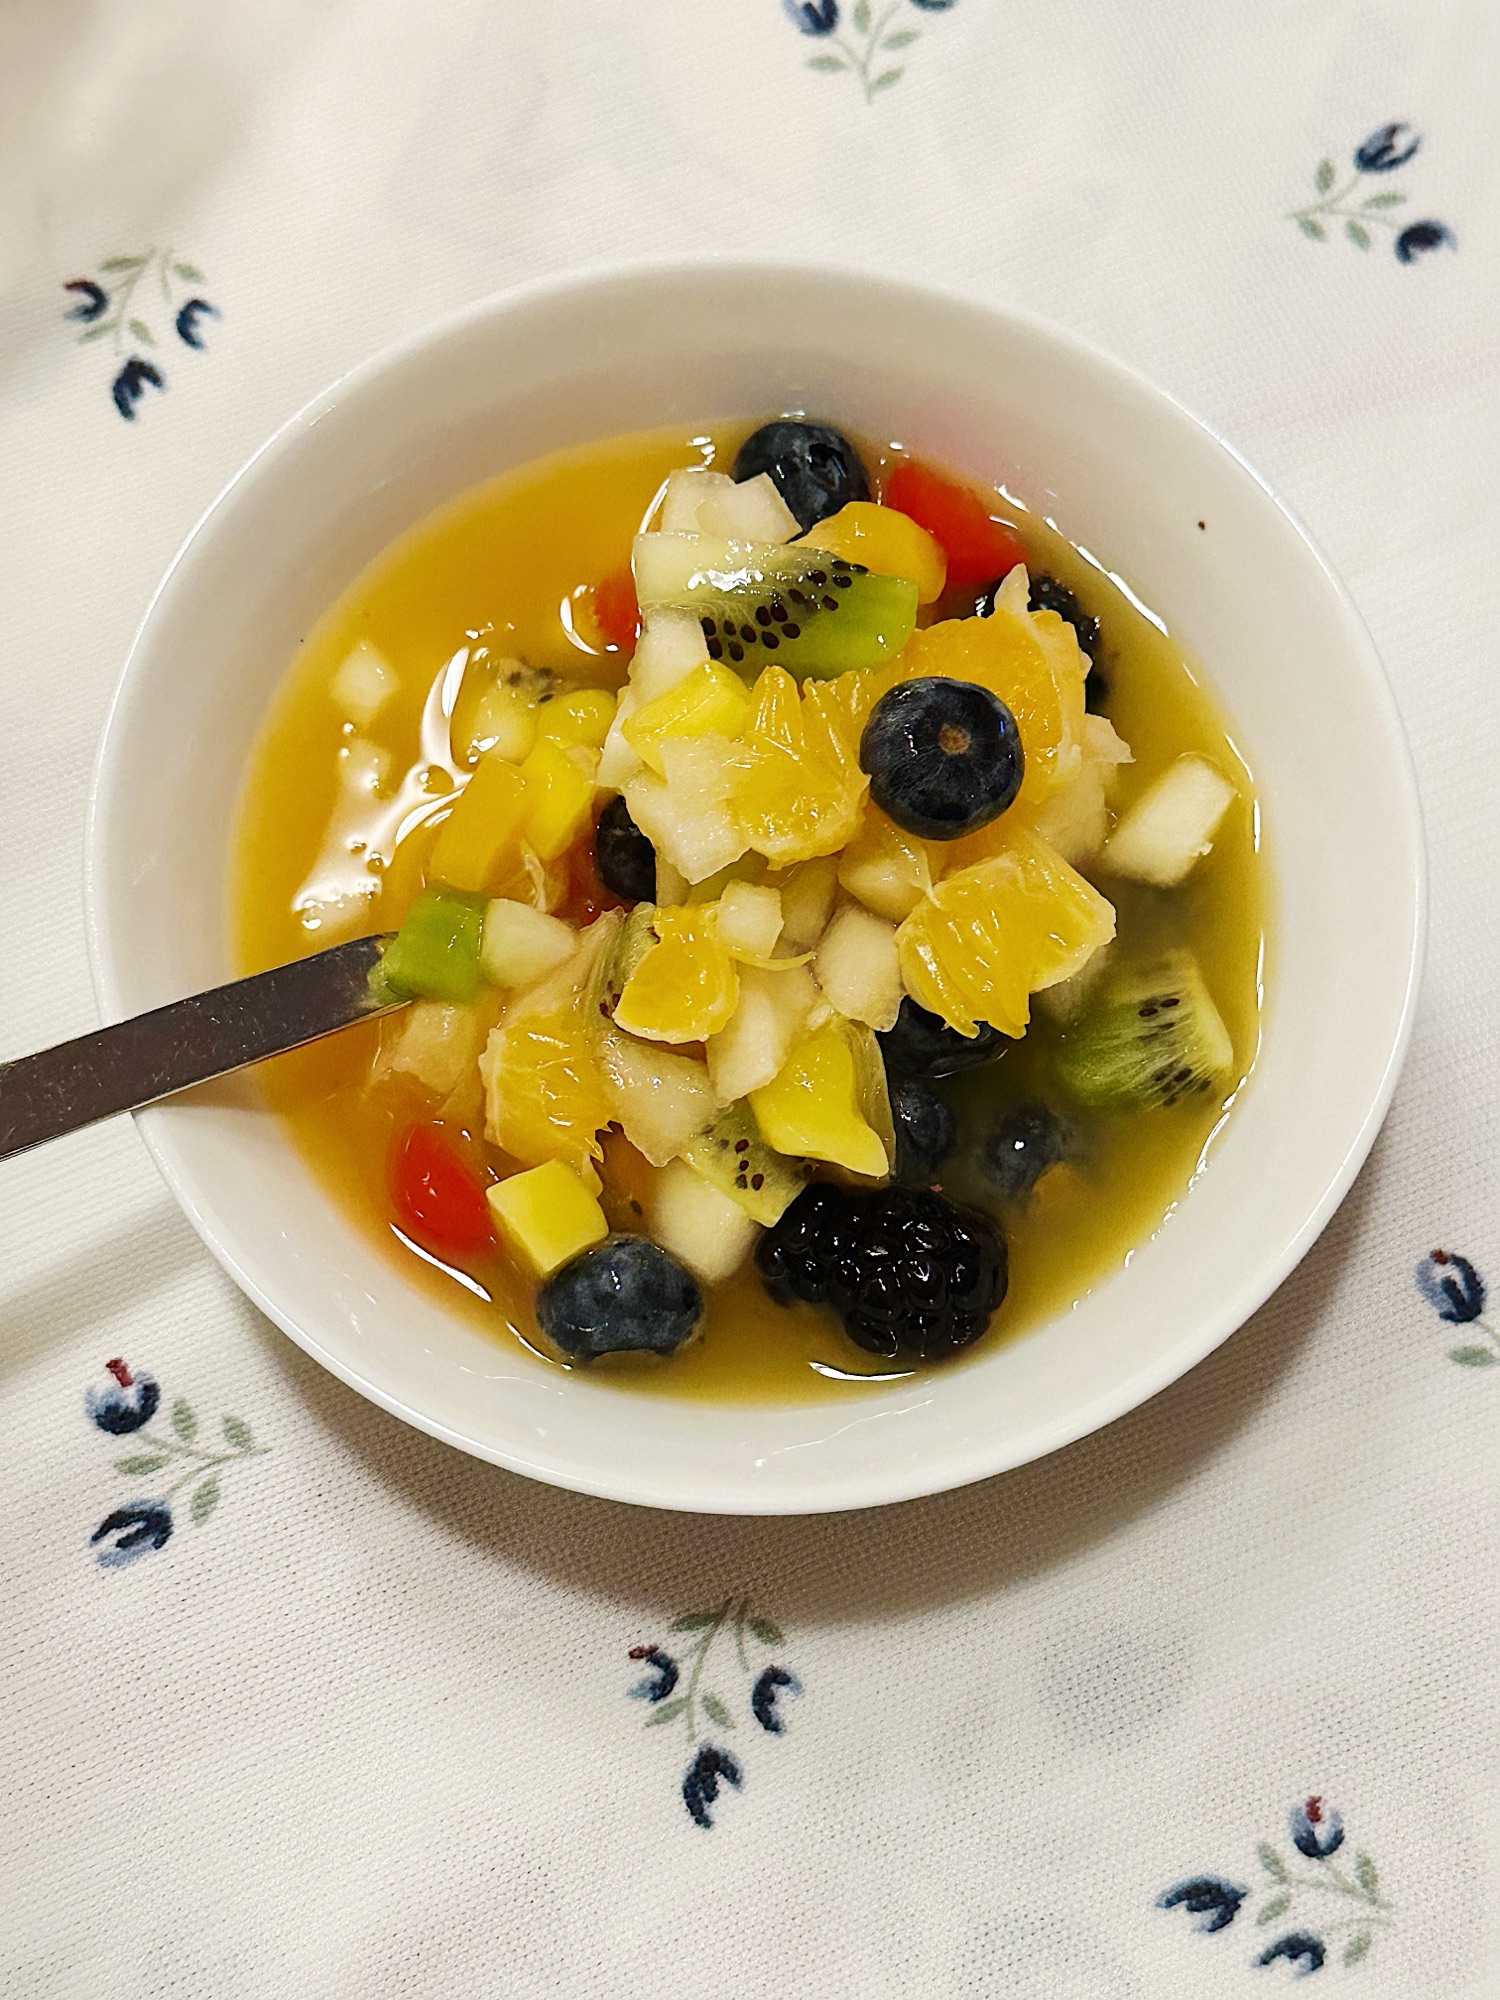 Salade de fruits à la clémentine, kiwis et bleuets